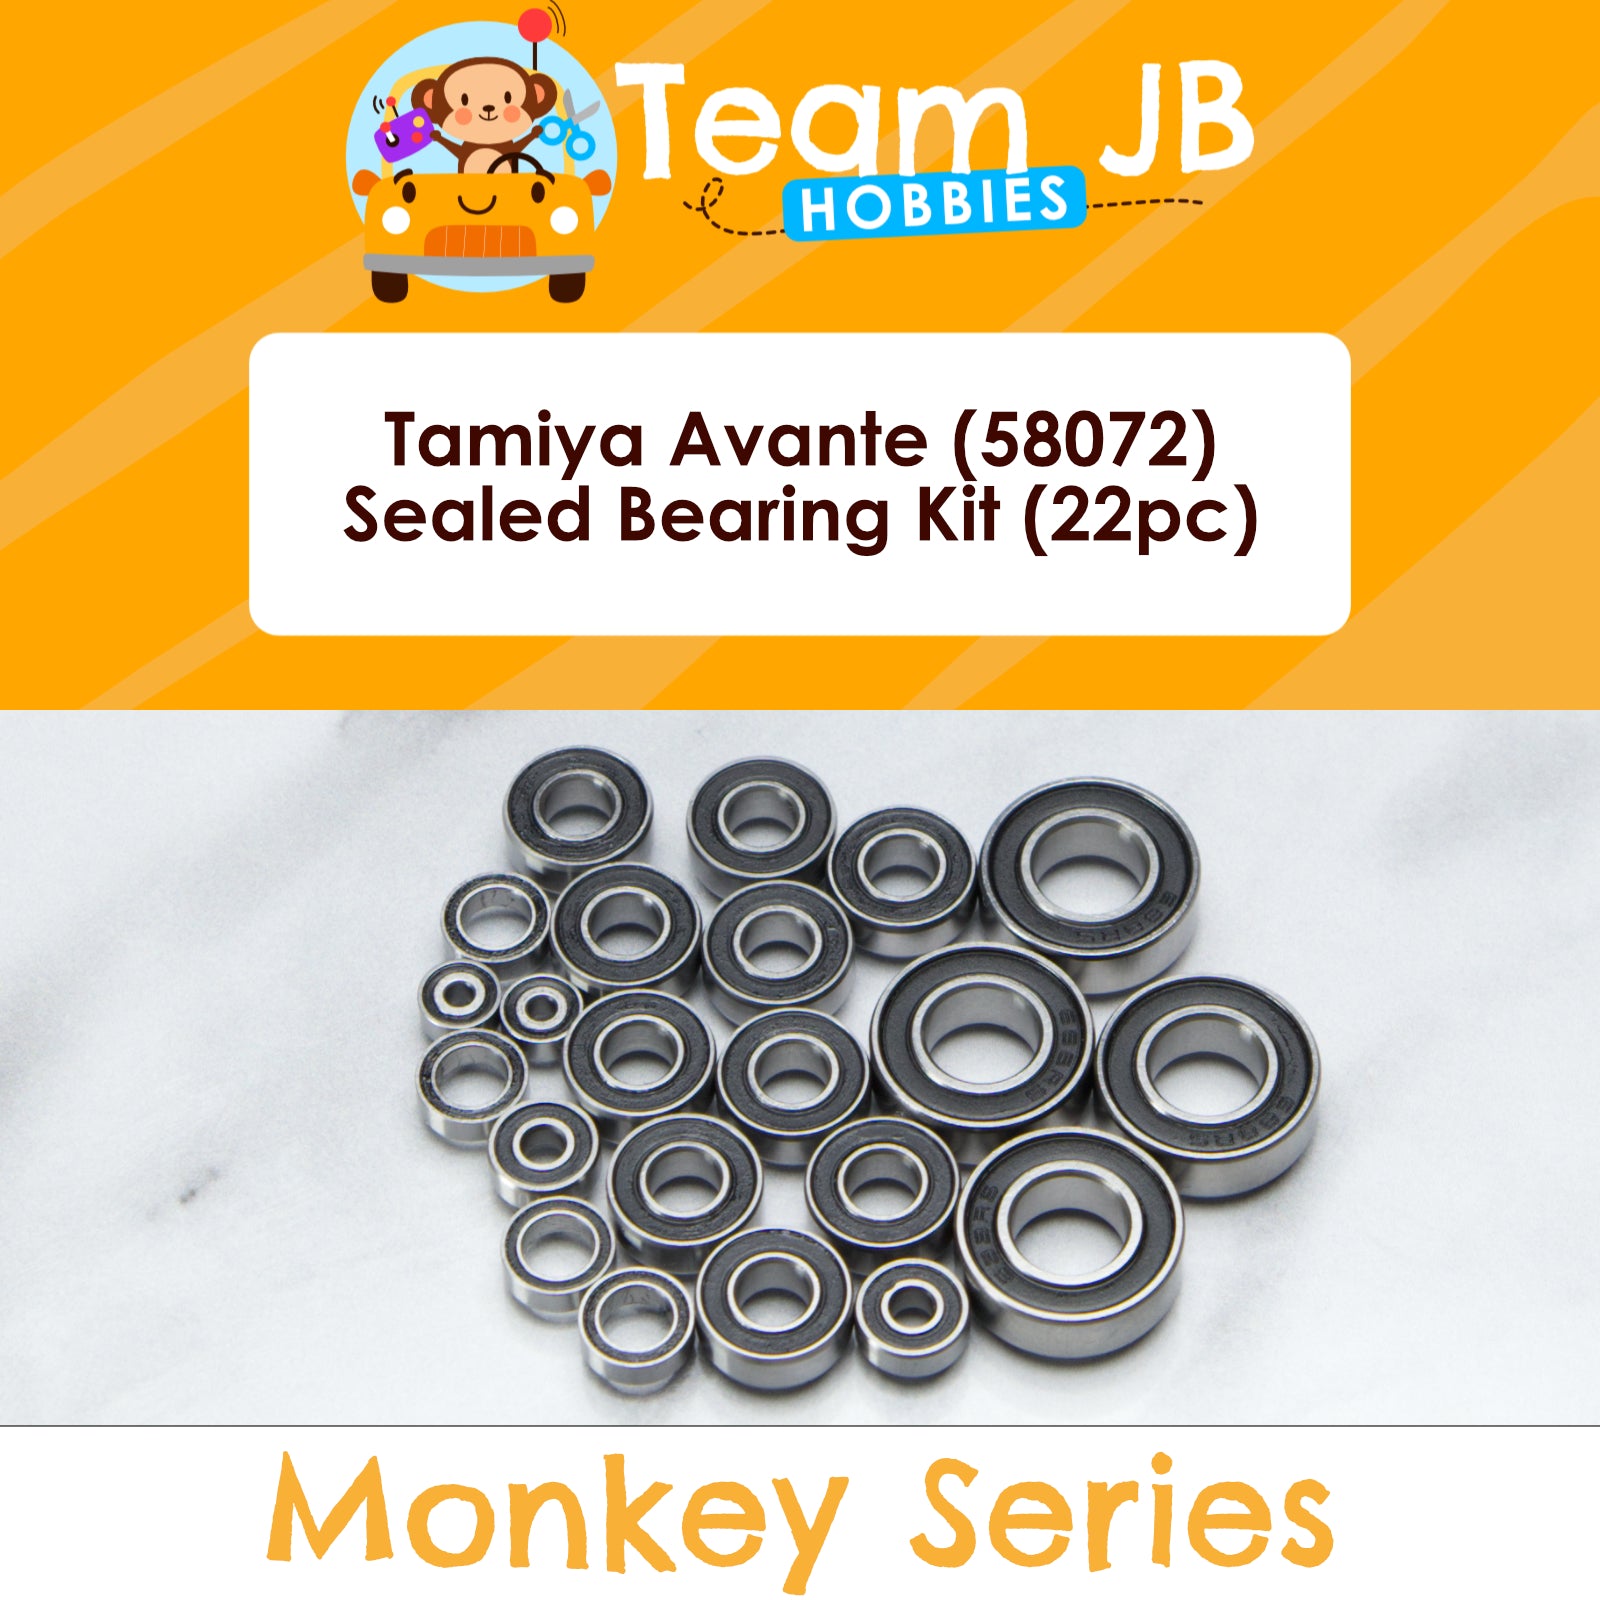 Tamiya Avante (58072) - Sealed Bearing Kit